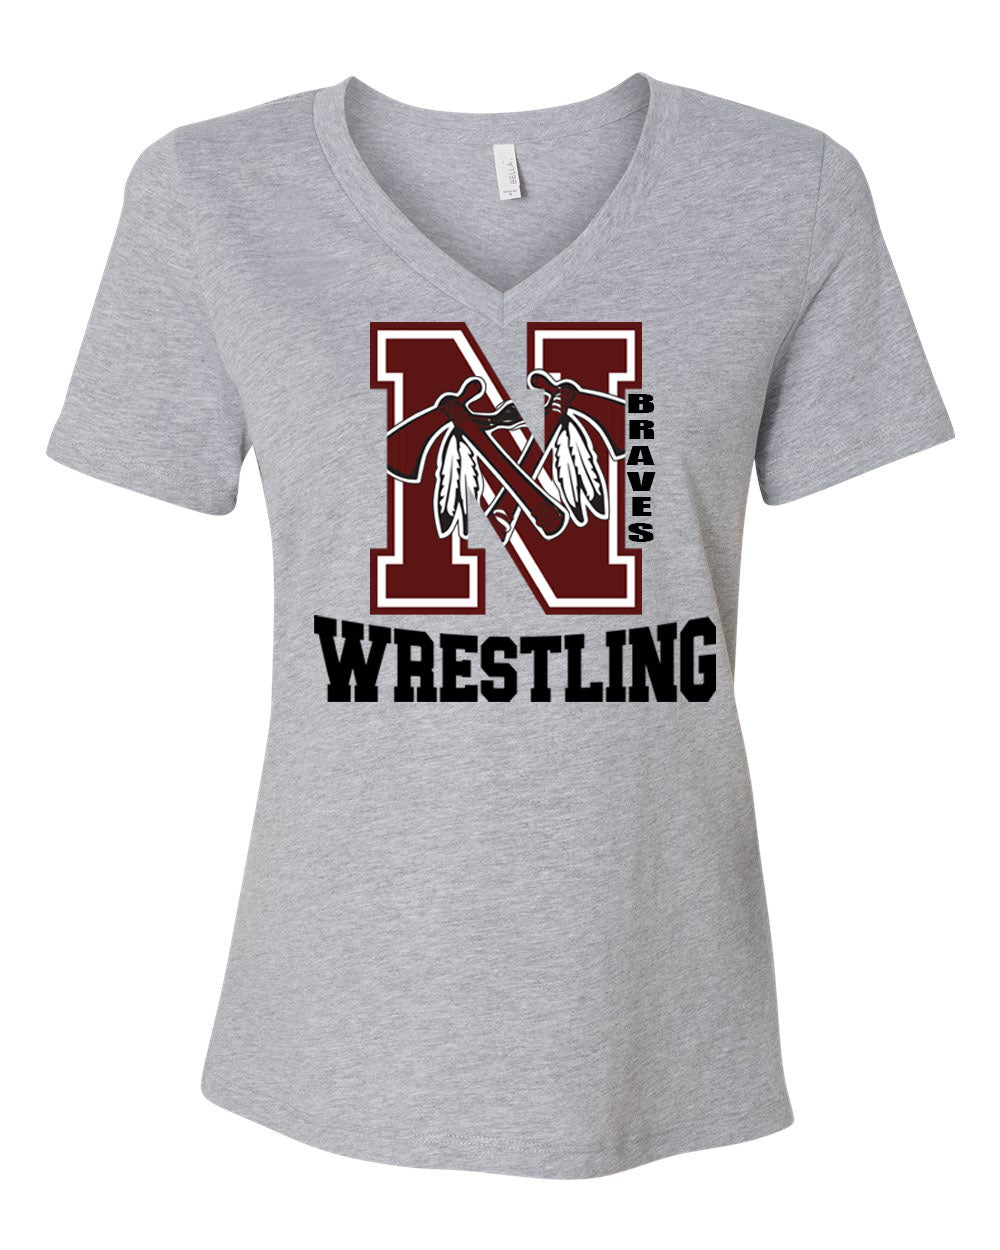 Newton wrestling design 4 V-neck T-shirt